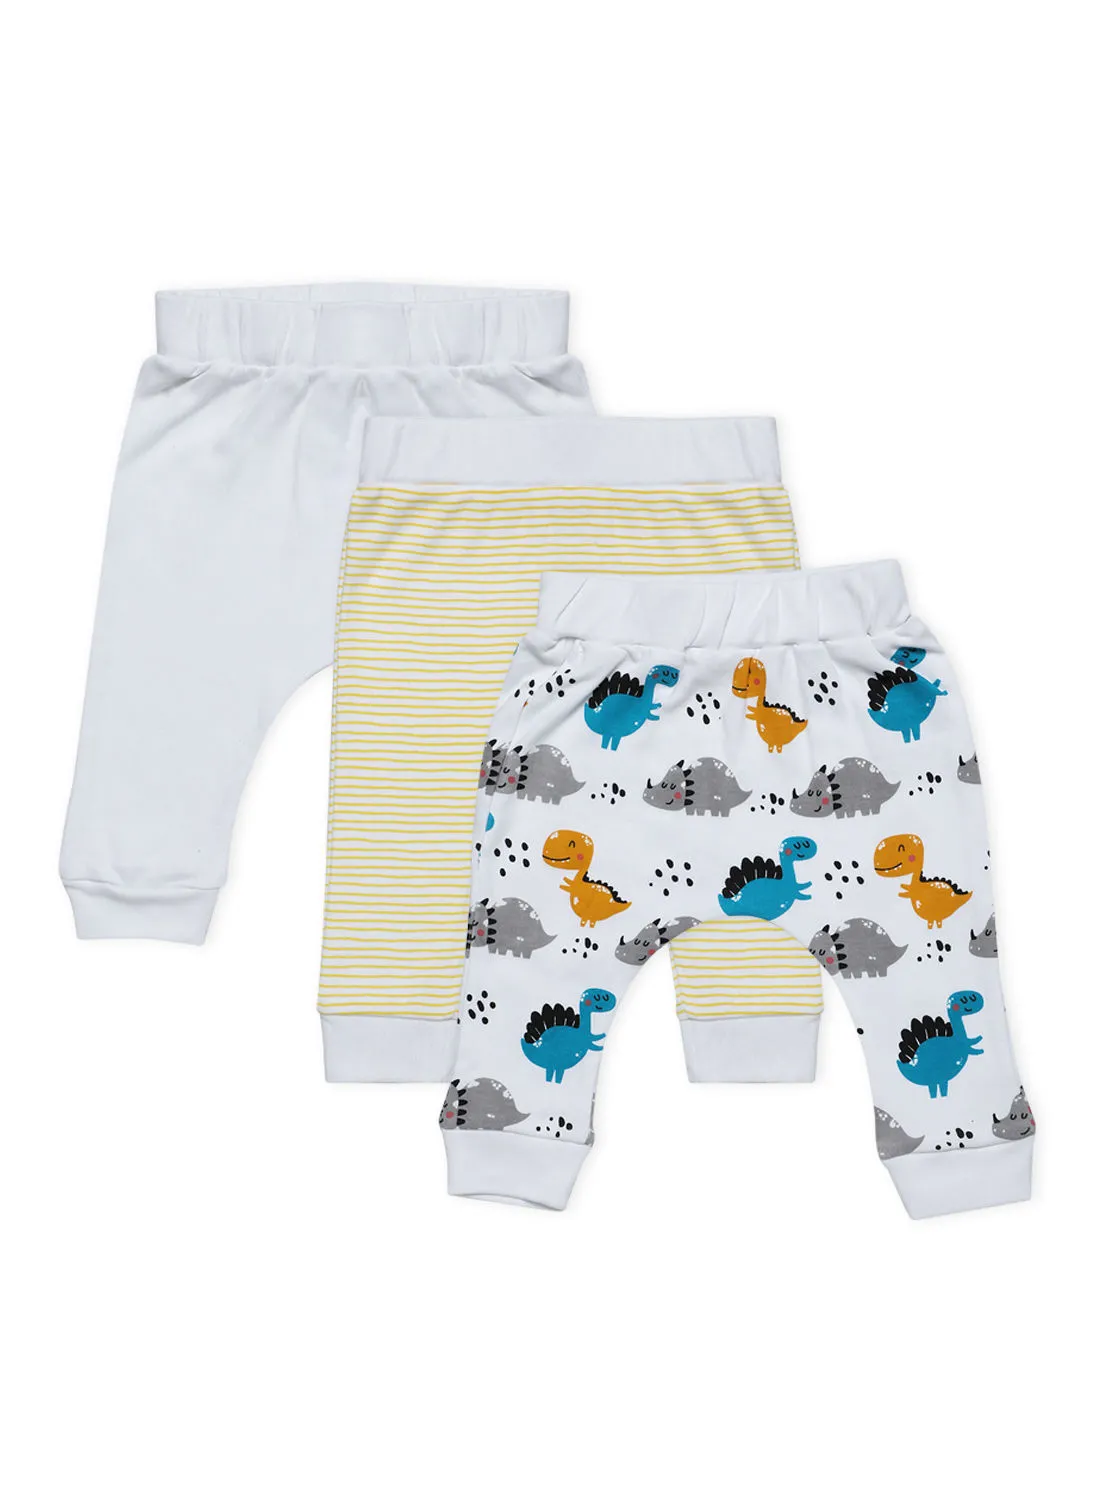 Bebi Baby Boys 3-Piece Cotton Diaper Pants Set White/Yellow/Blue